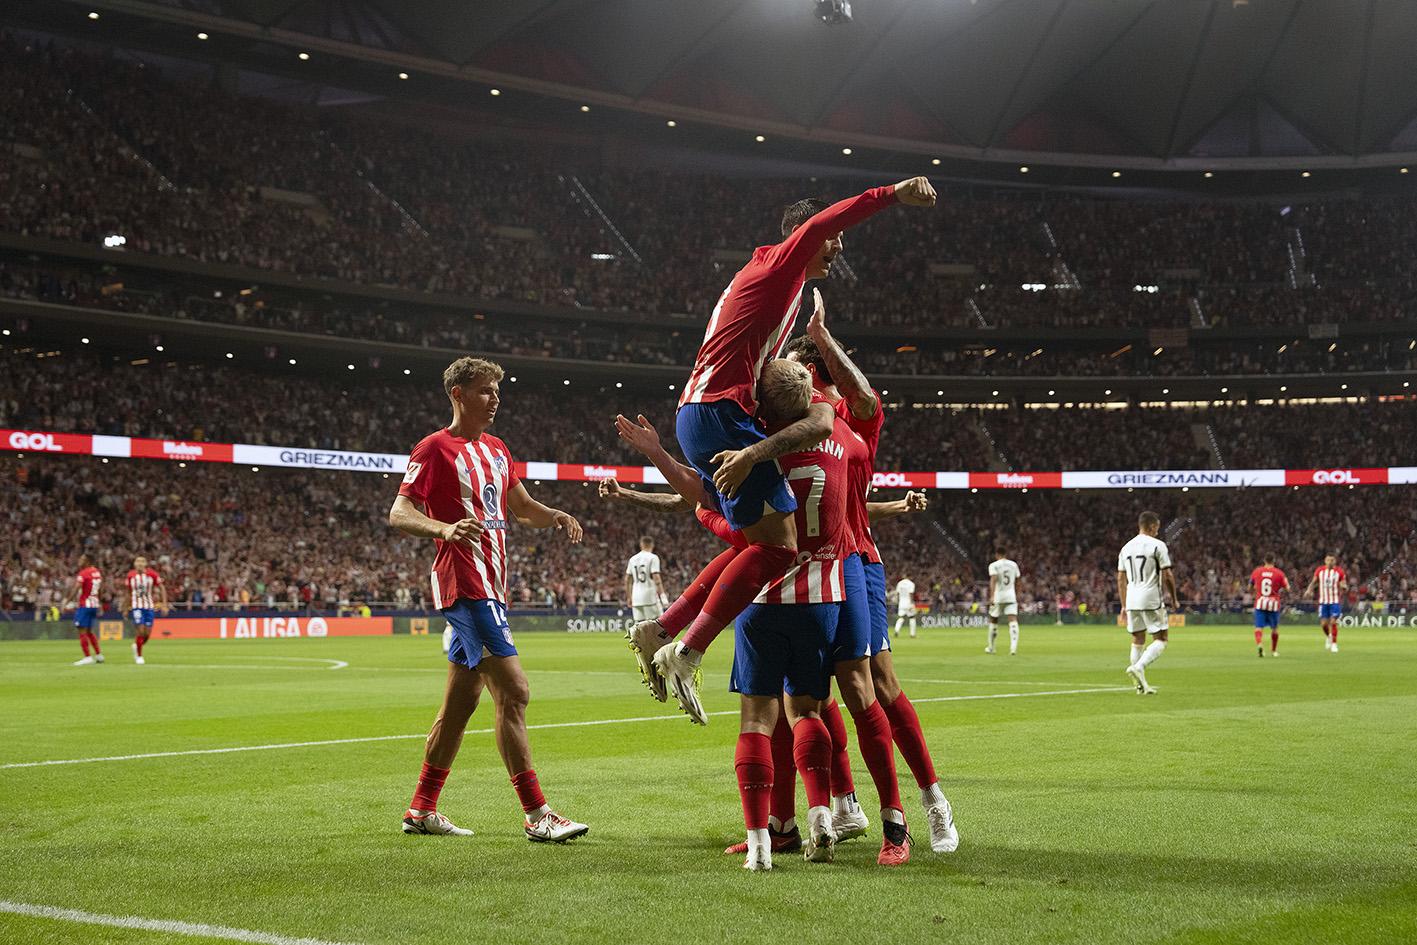 El Derbi se pinta de rojiblanco: Atlético de Madrid se impone ante el Real Madrid gracias a Griezmann. Noticias en tiempo real